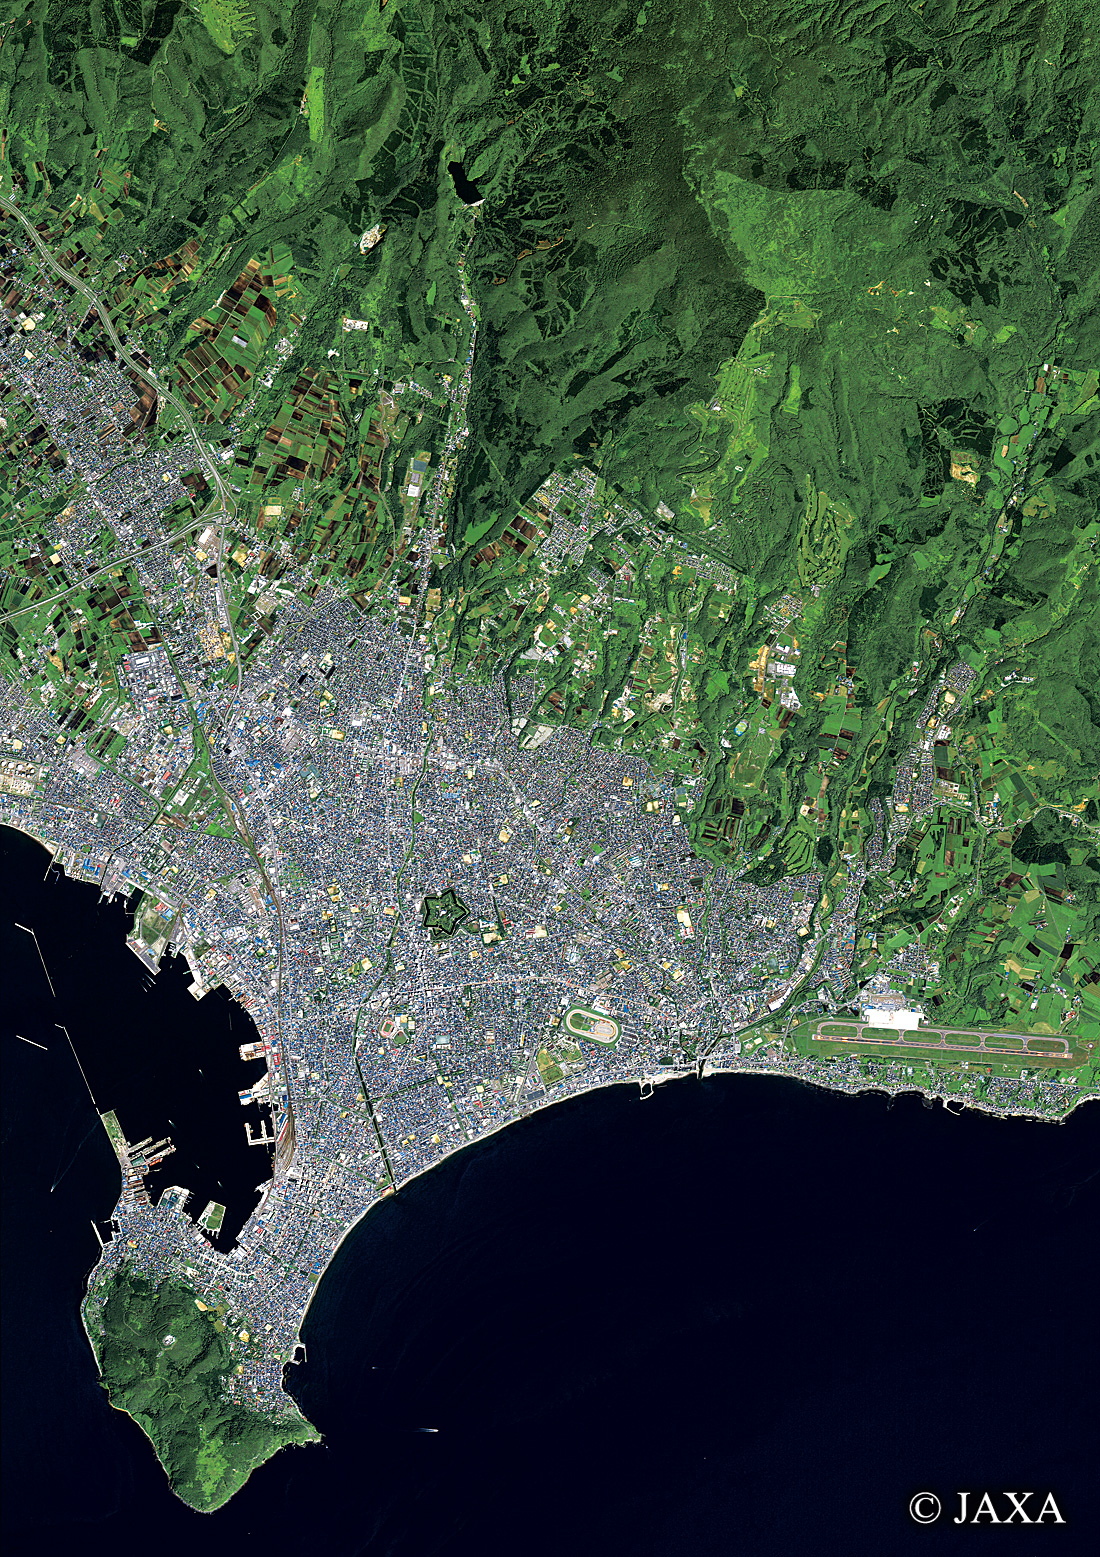 だいちから見た日本の都市 函館市周辺:衛星画像